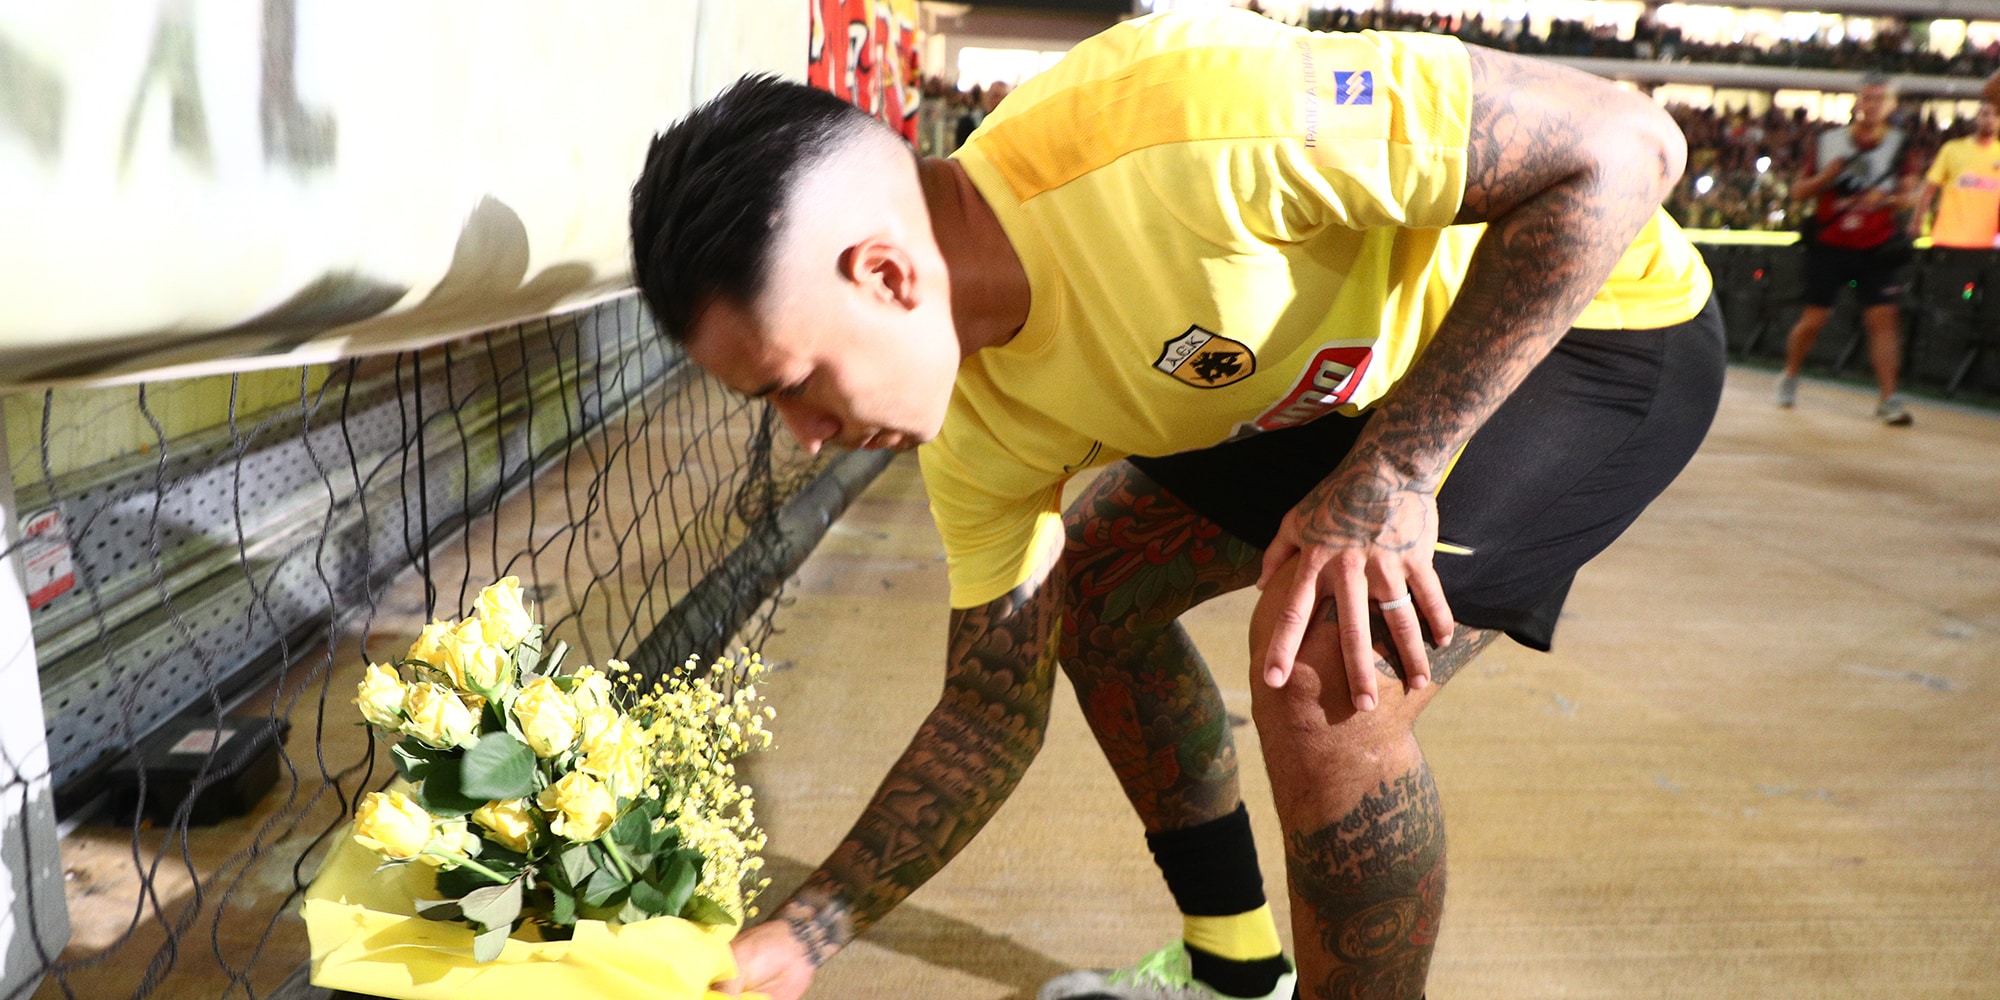 ΑΕΚ: Σε βαρύ κλίμα πριν την έναρξη - Λουλούδια στην κερκίδα, πανό του Μιχάλη και η οικογένεια του 29χρονου στο γήπεδο